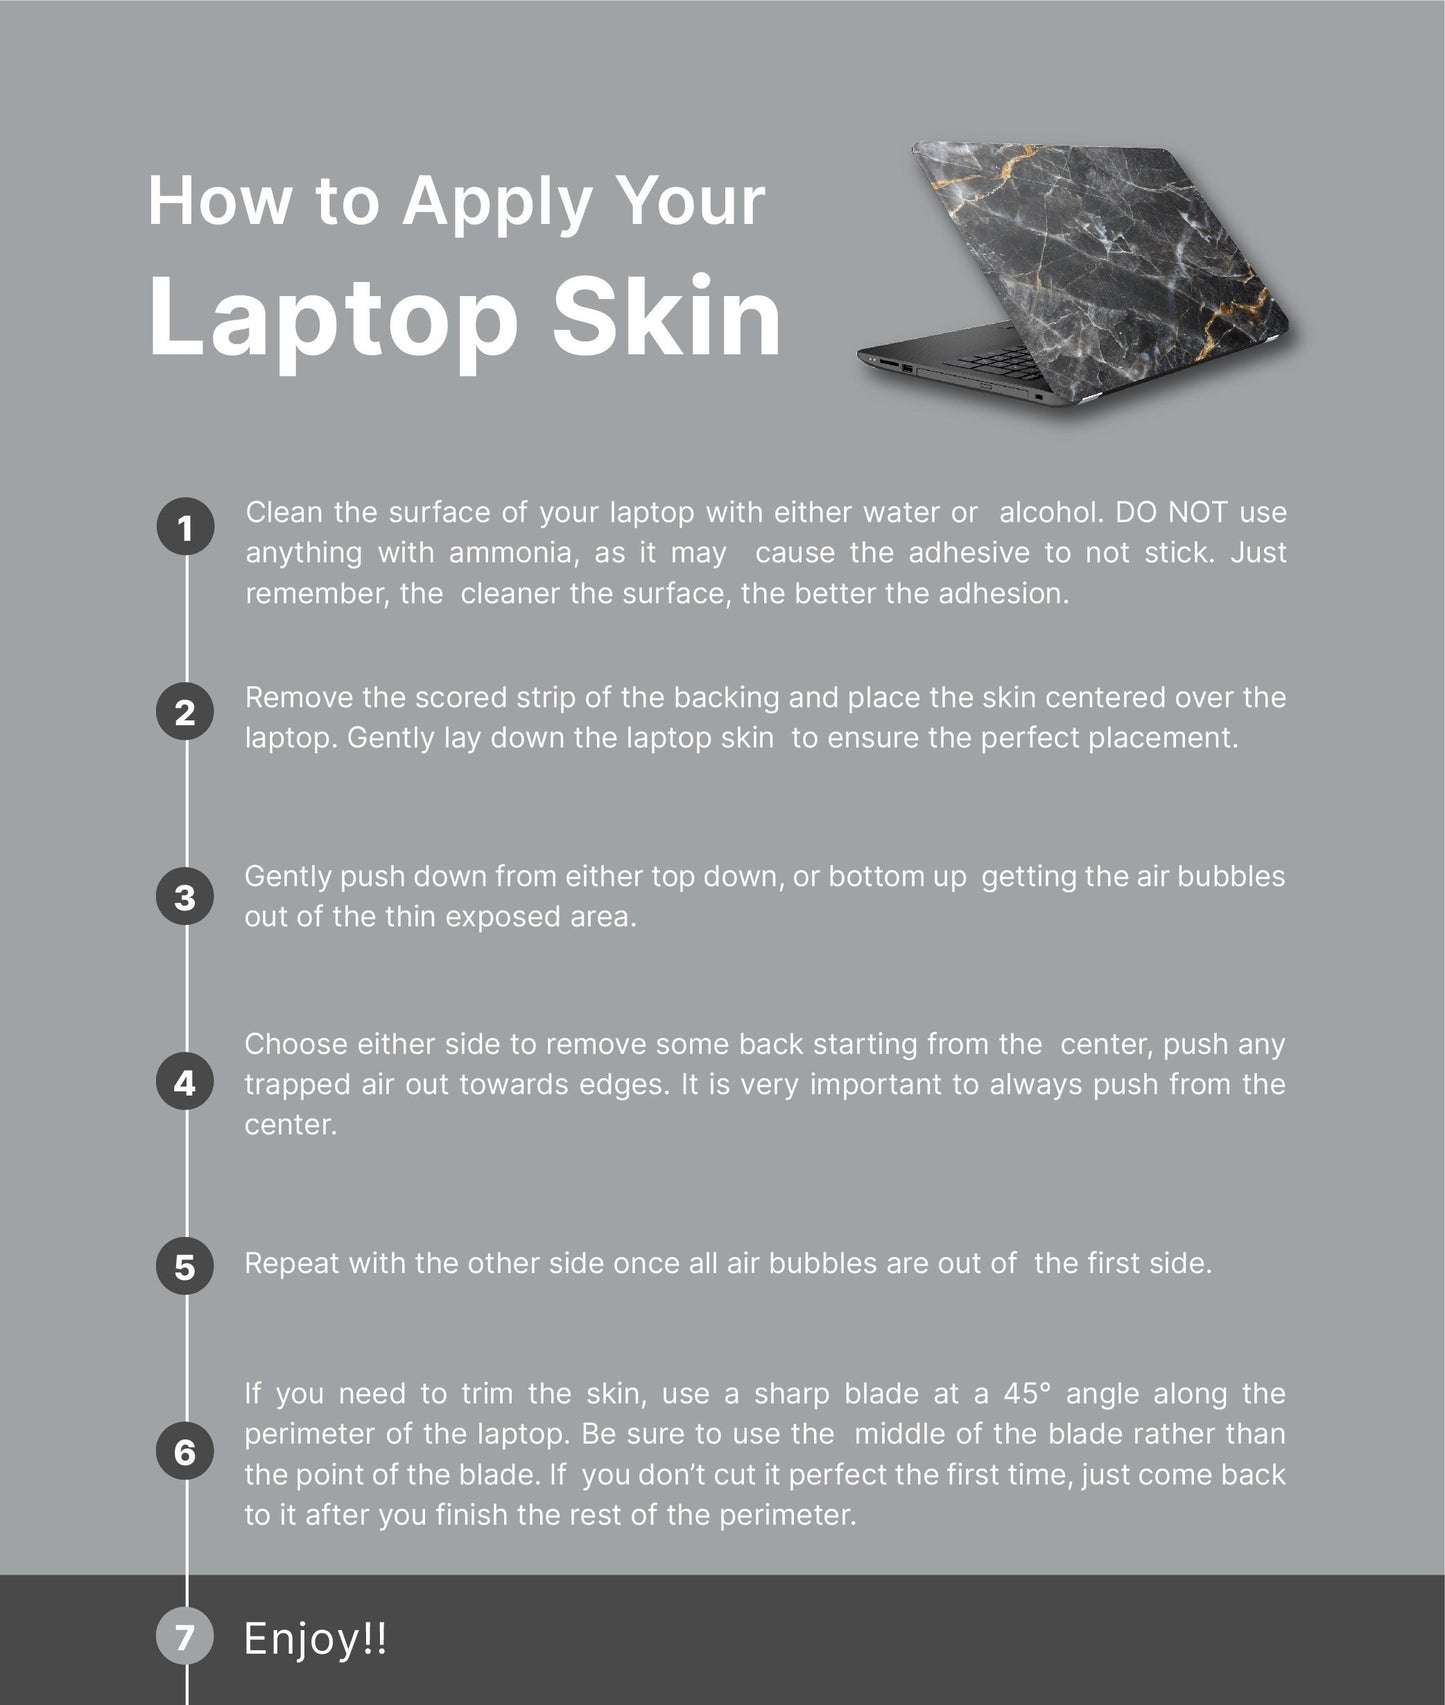 CUSTOM LOGO Laptop Skin, Laptop Cover, Laptop Skins, Removable Laptop Skins, Laptop Decal, Customized Laptop Skin, Laptop Stickers 282